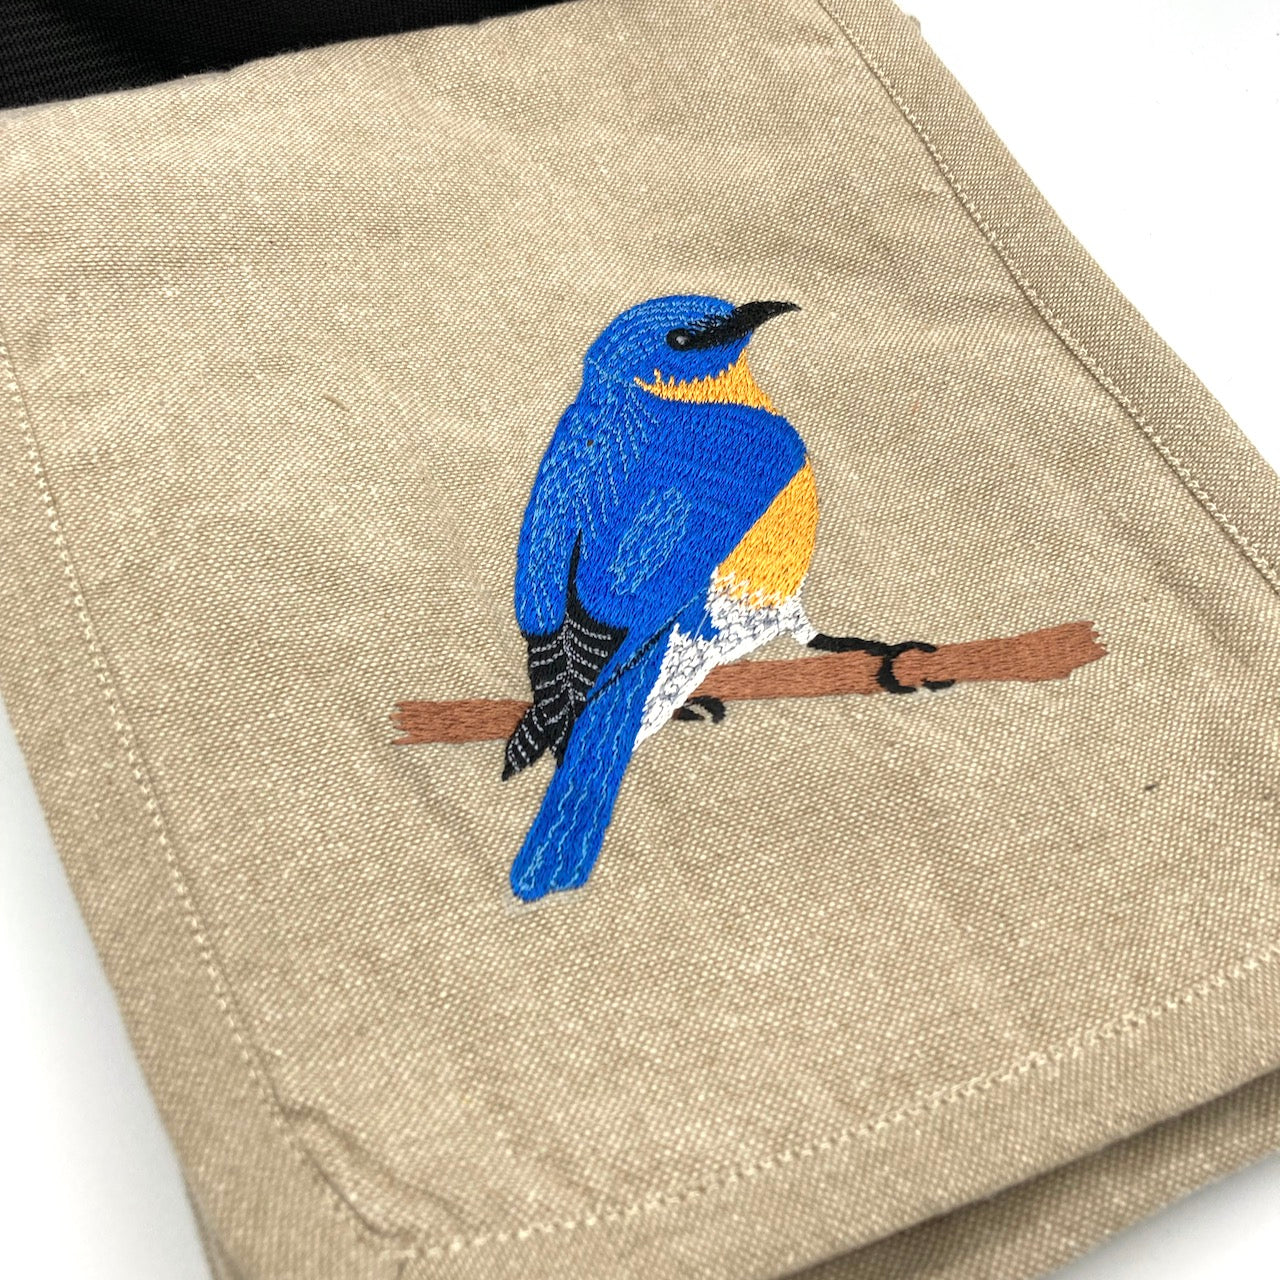 Eastern Bluebird Field Bag